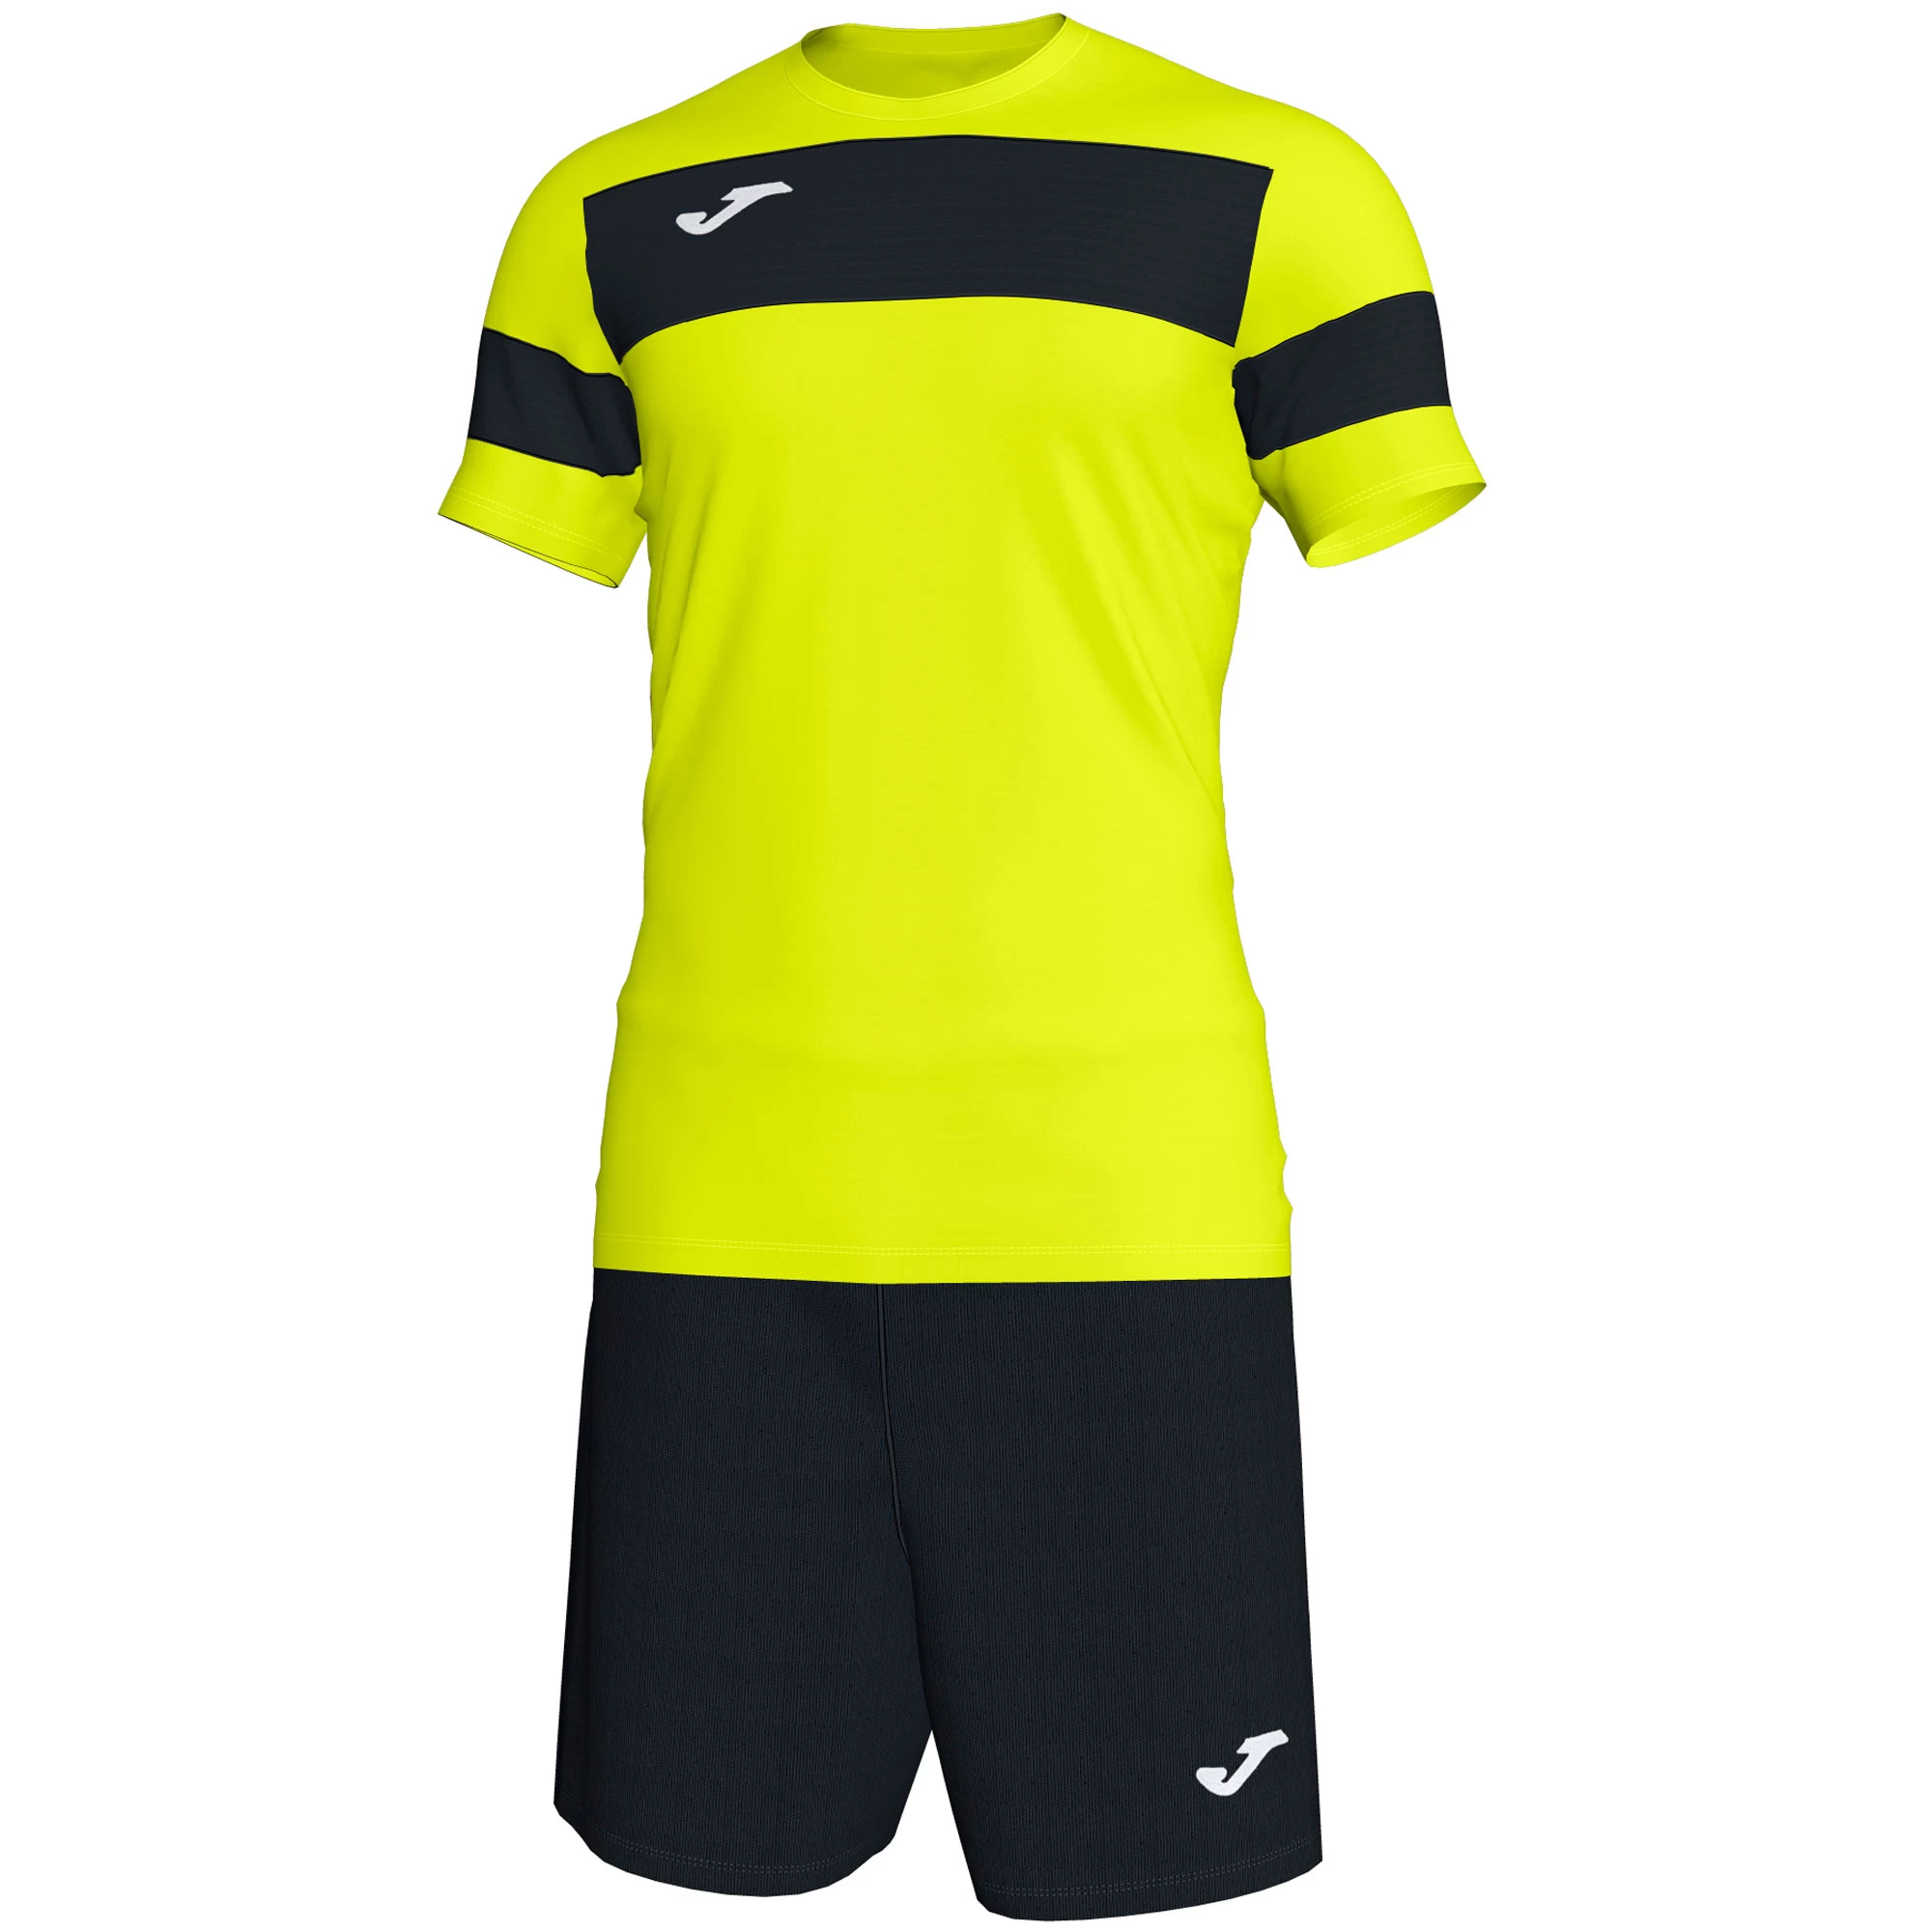 Футбольная форма Yellow-Black